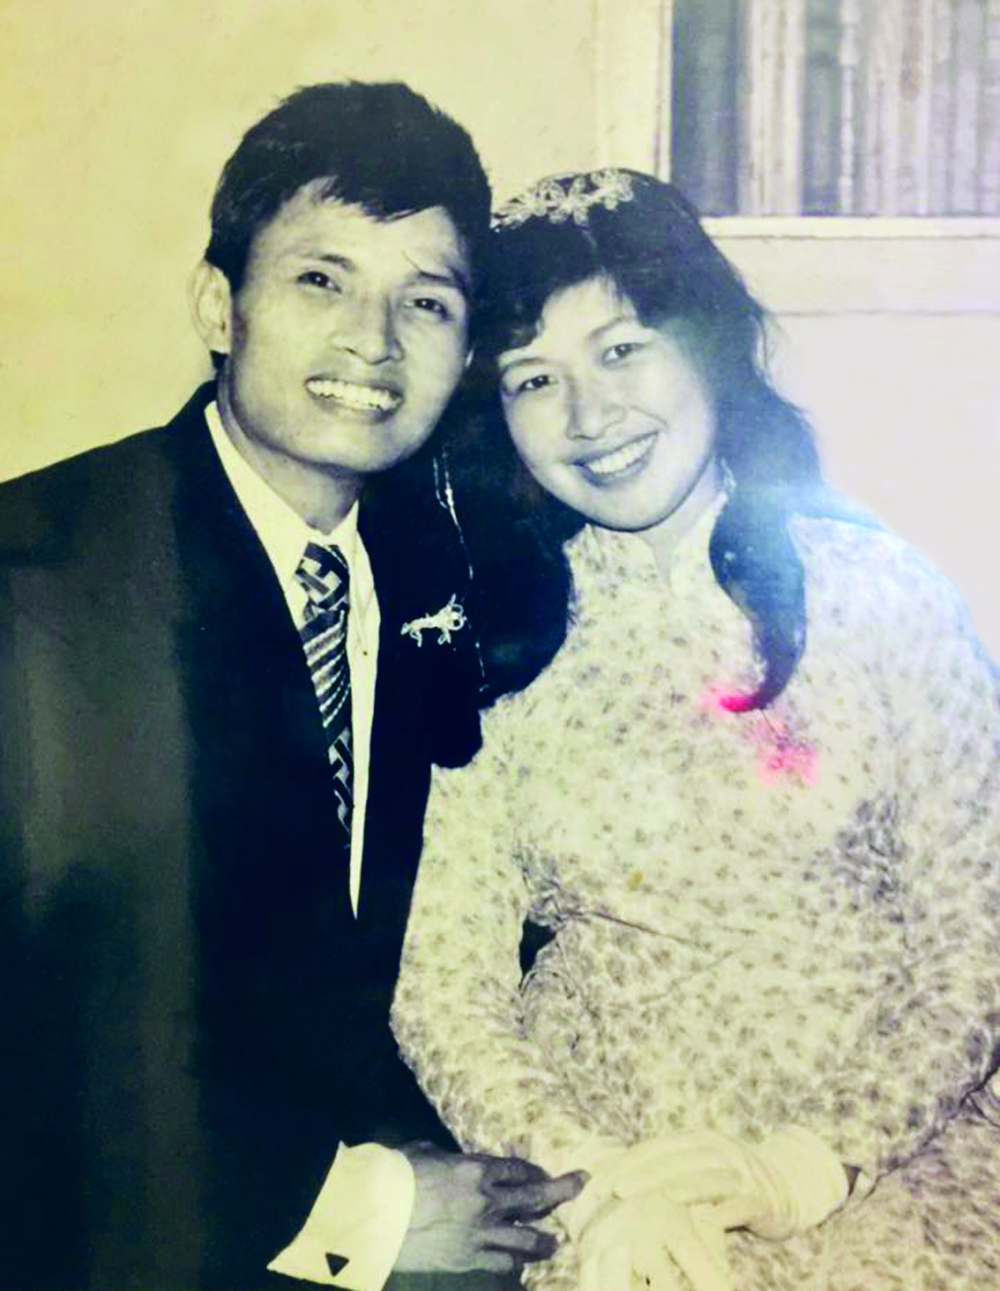 Cô dâu Mai Loan và chú rể Xuân Nhân trong ngày cưới (ảnh chụp ngày 5/4/1975)